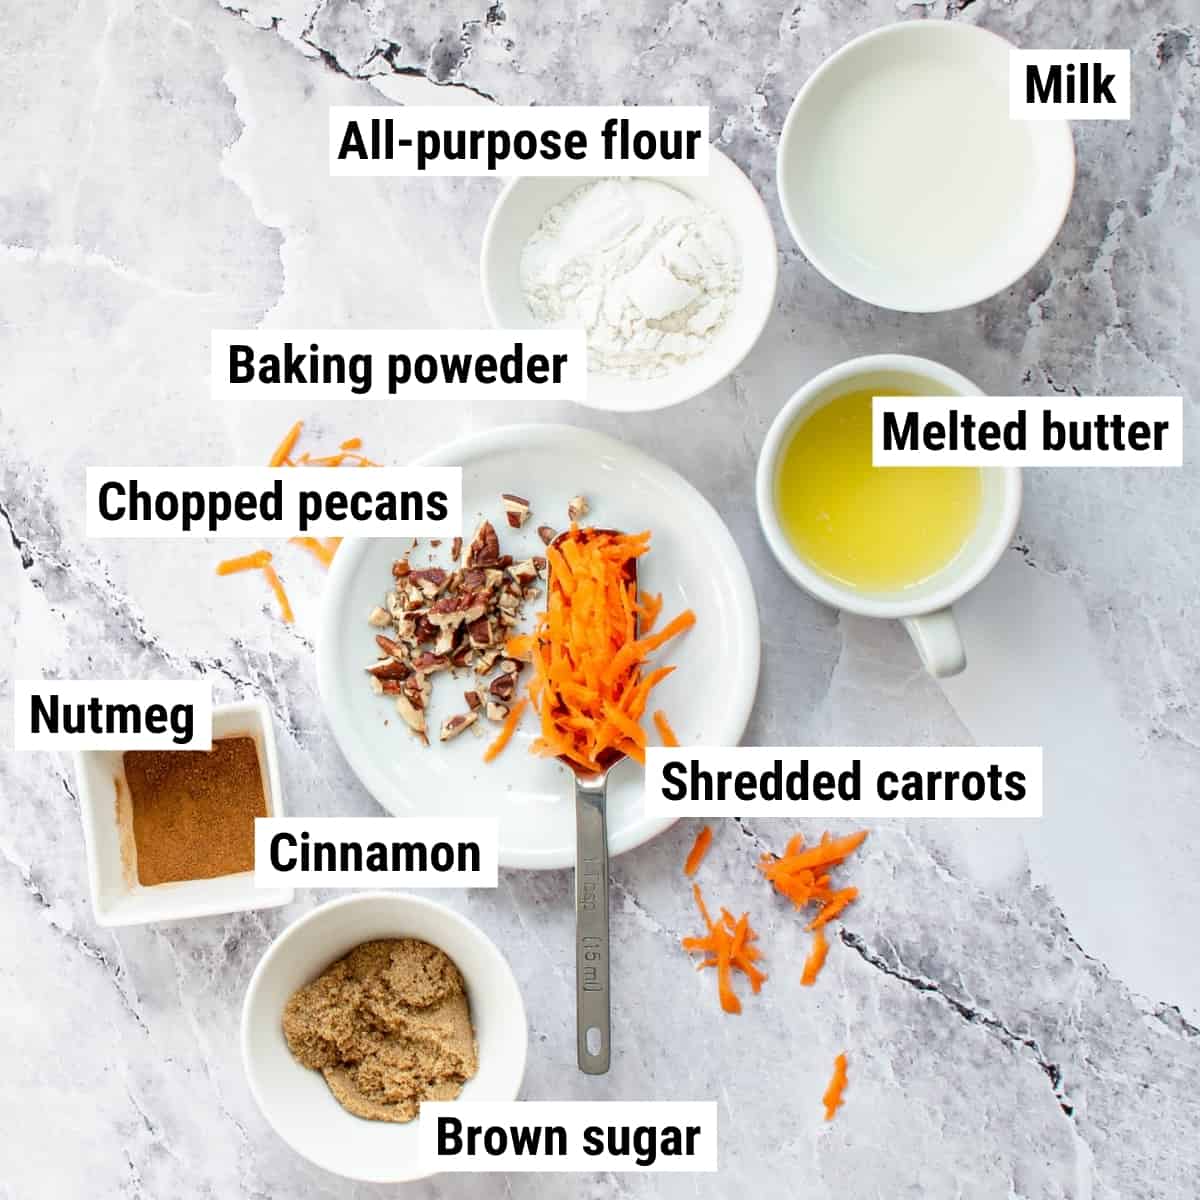 The ingredients to make carrot mug cake.